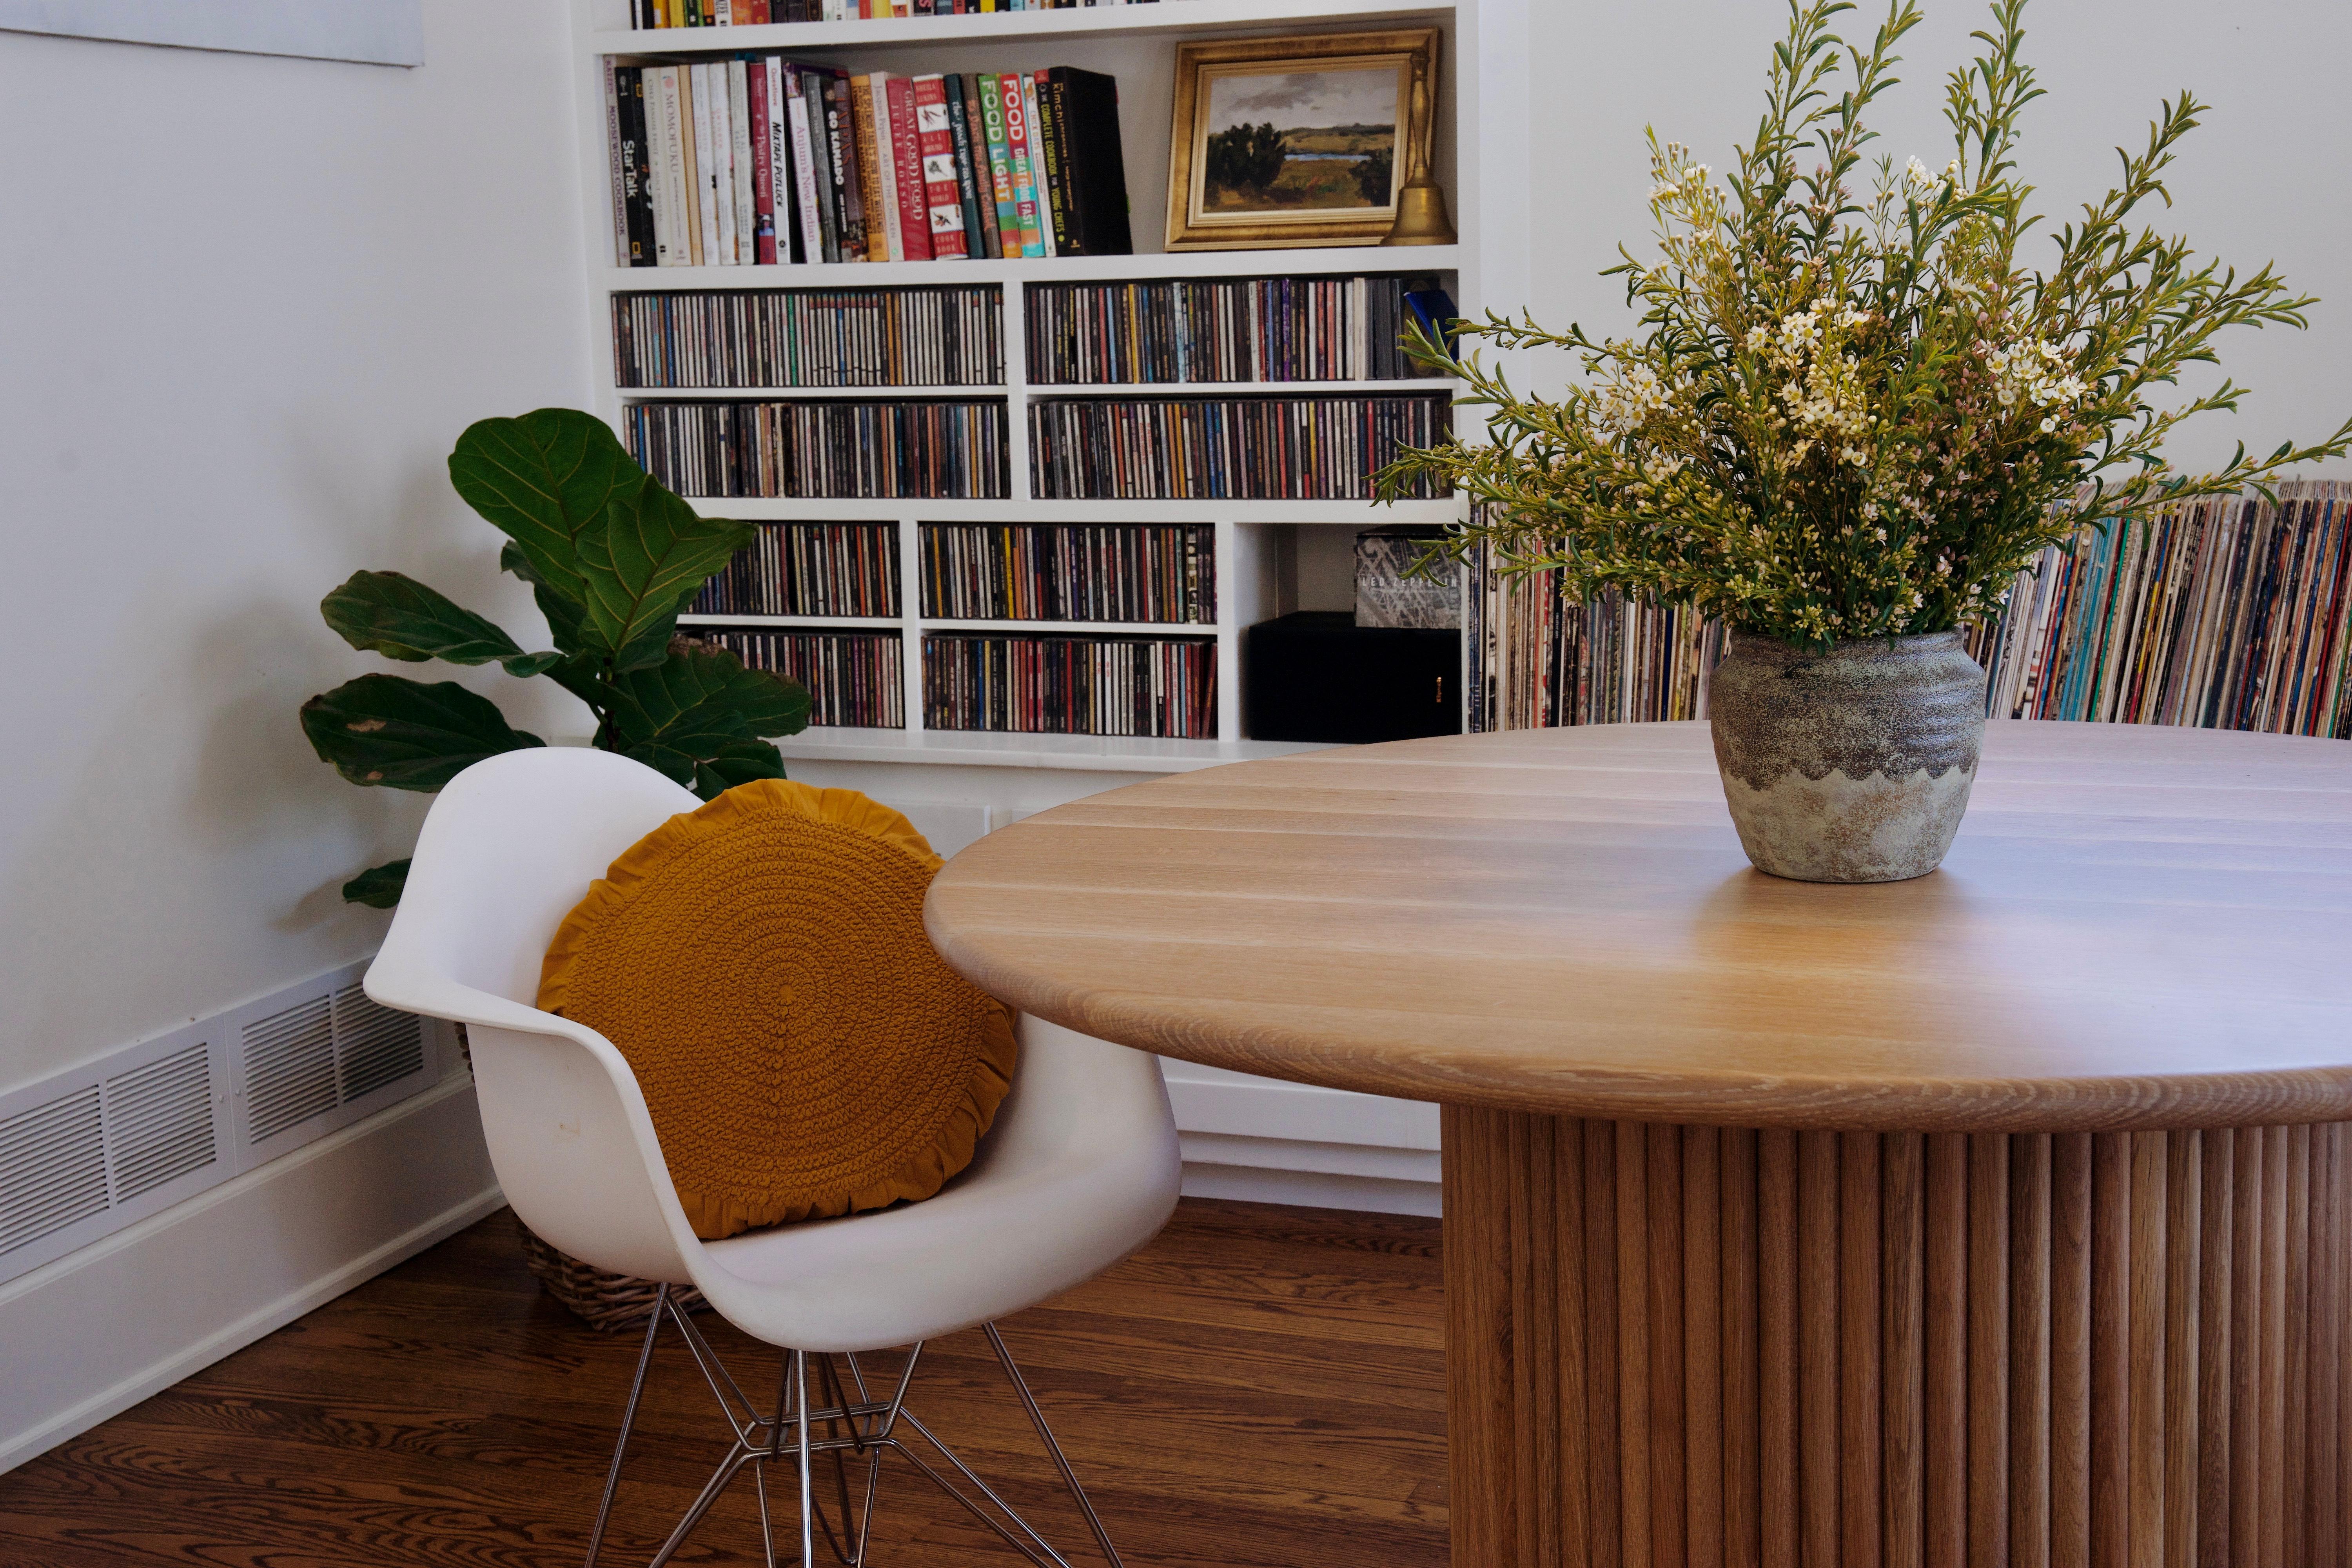 Cette table en chêne blanc massif est fabriquée à partir de bois provenant du Midwest et bénéficie d'une finition durable capable de résister aux rigueurs d'une maison, d'un bureau ou d'un chalet très fréquenté.

La base cylindrique est dotée d'un